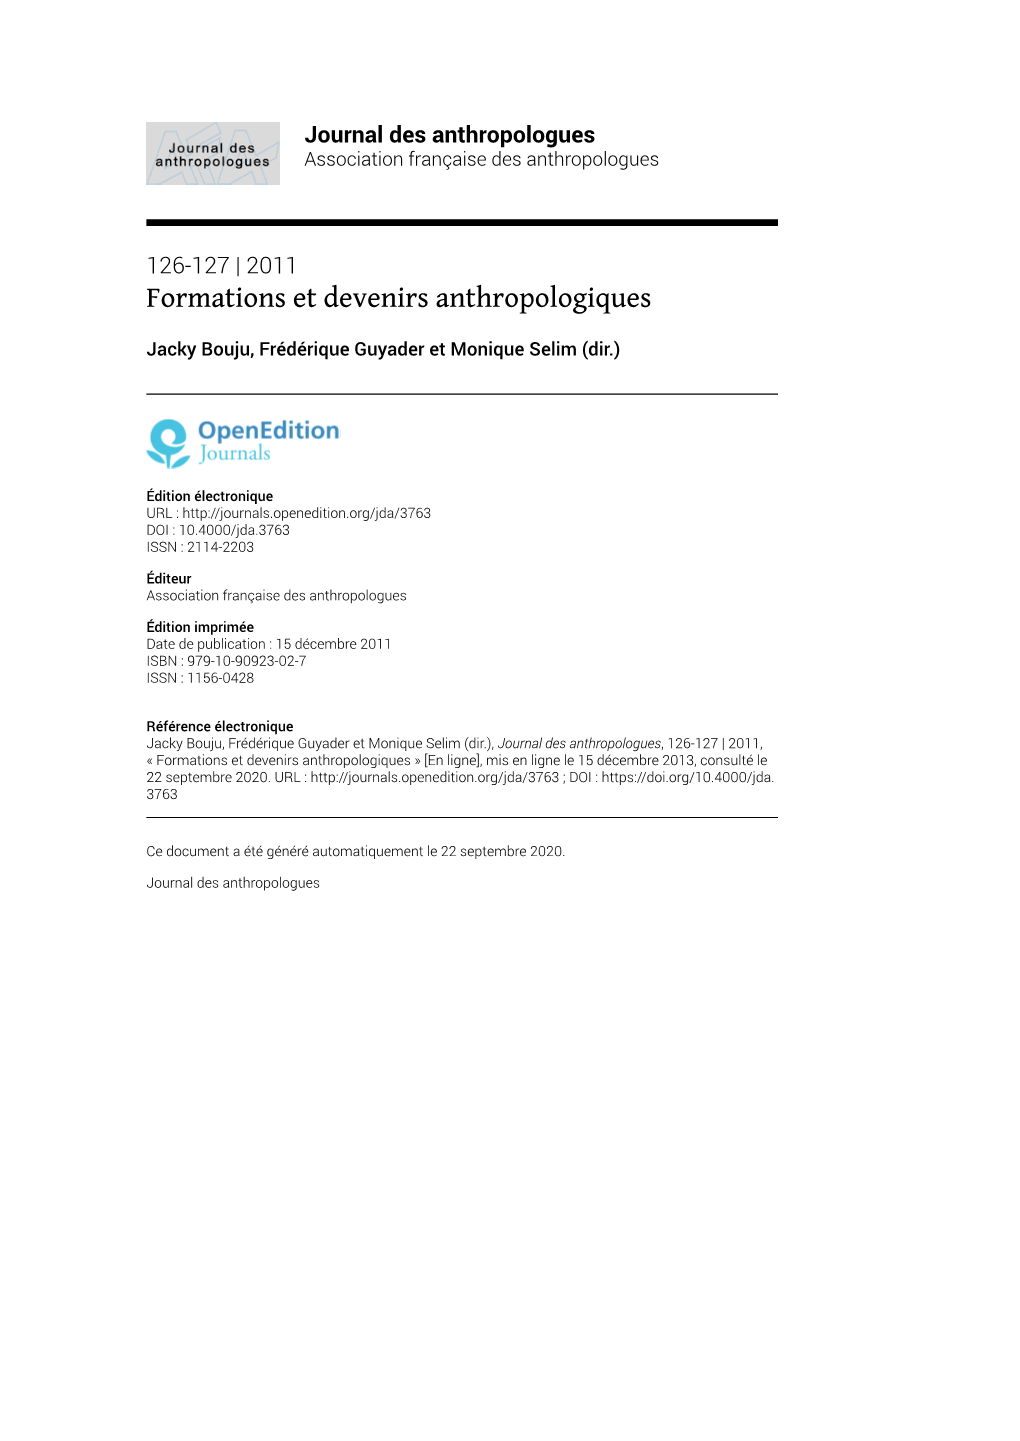 Journal Des Anthropologues, 126-127 | 2011, « Formations Et Devenirs Anthropologiques » [En Ligne], Mis En Ligne Le 15 Décembre 2013, Consulté Le 22 Septembre 2020